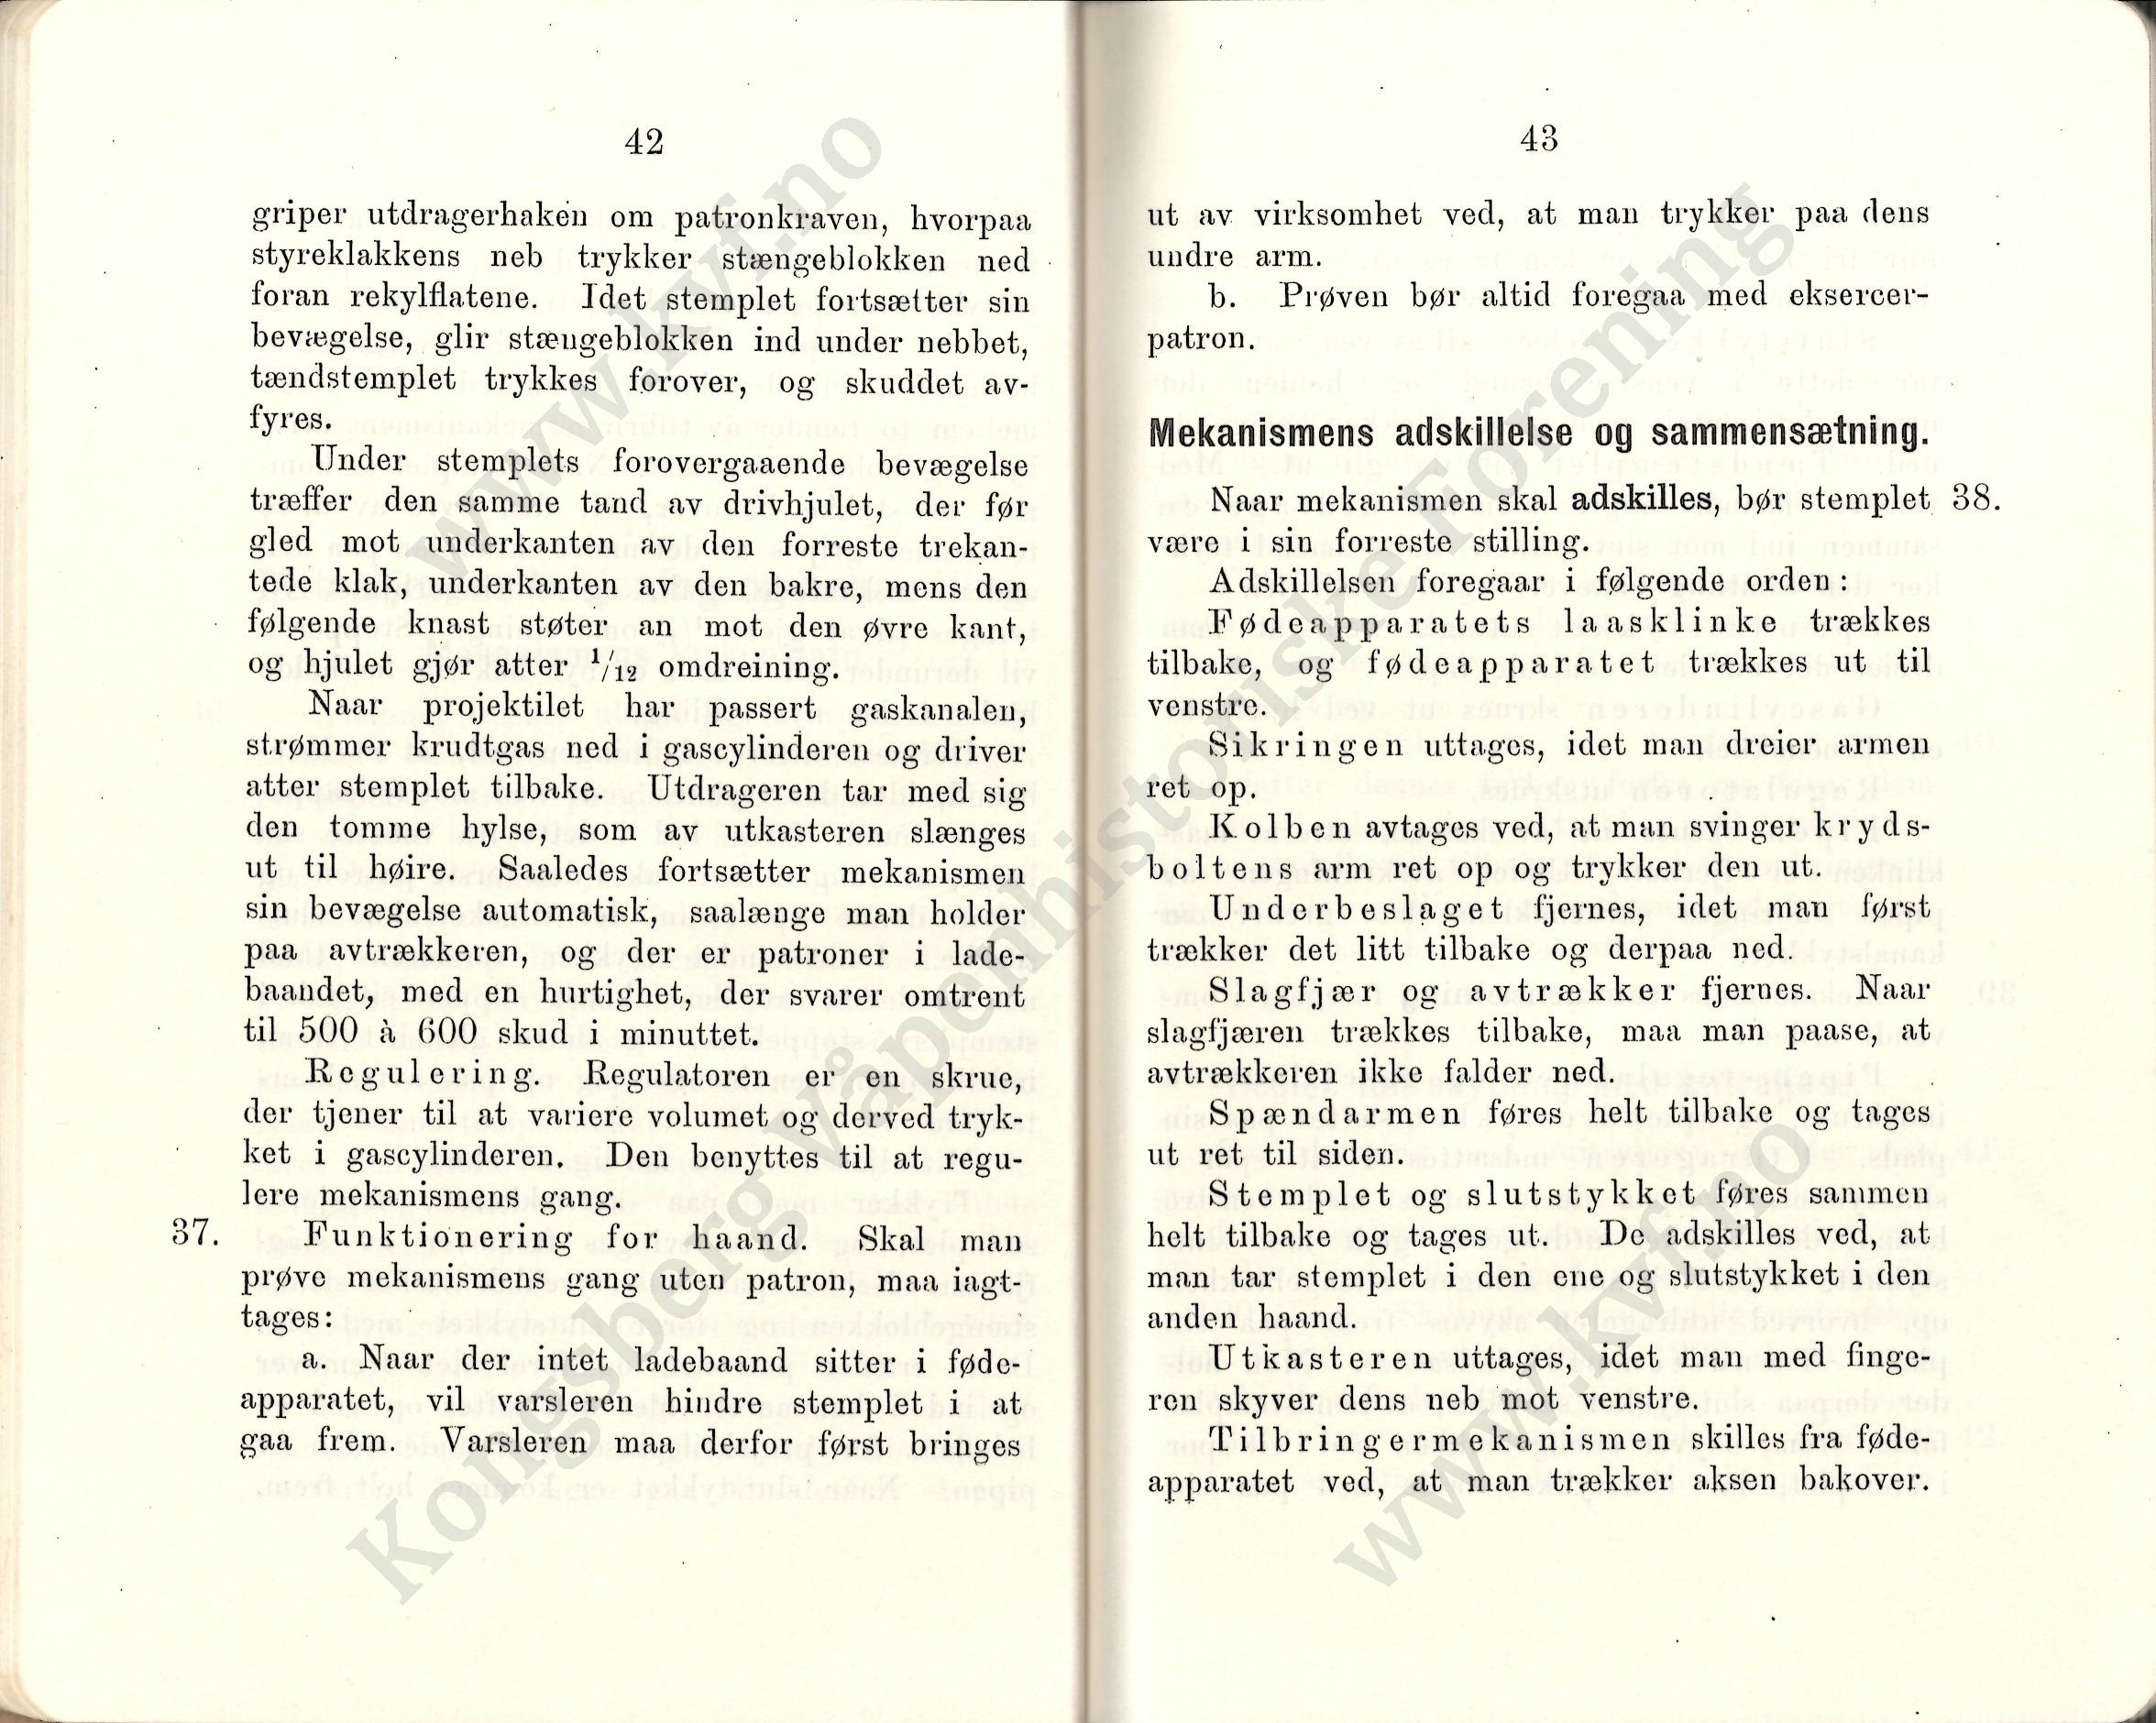 ./doc/reglement/Kav1910/Haandbok-Kav-Mitr-1910-21.jpg